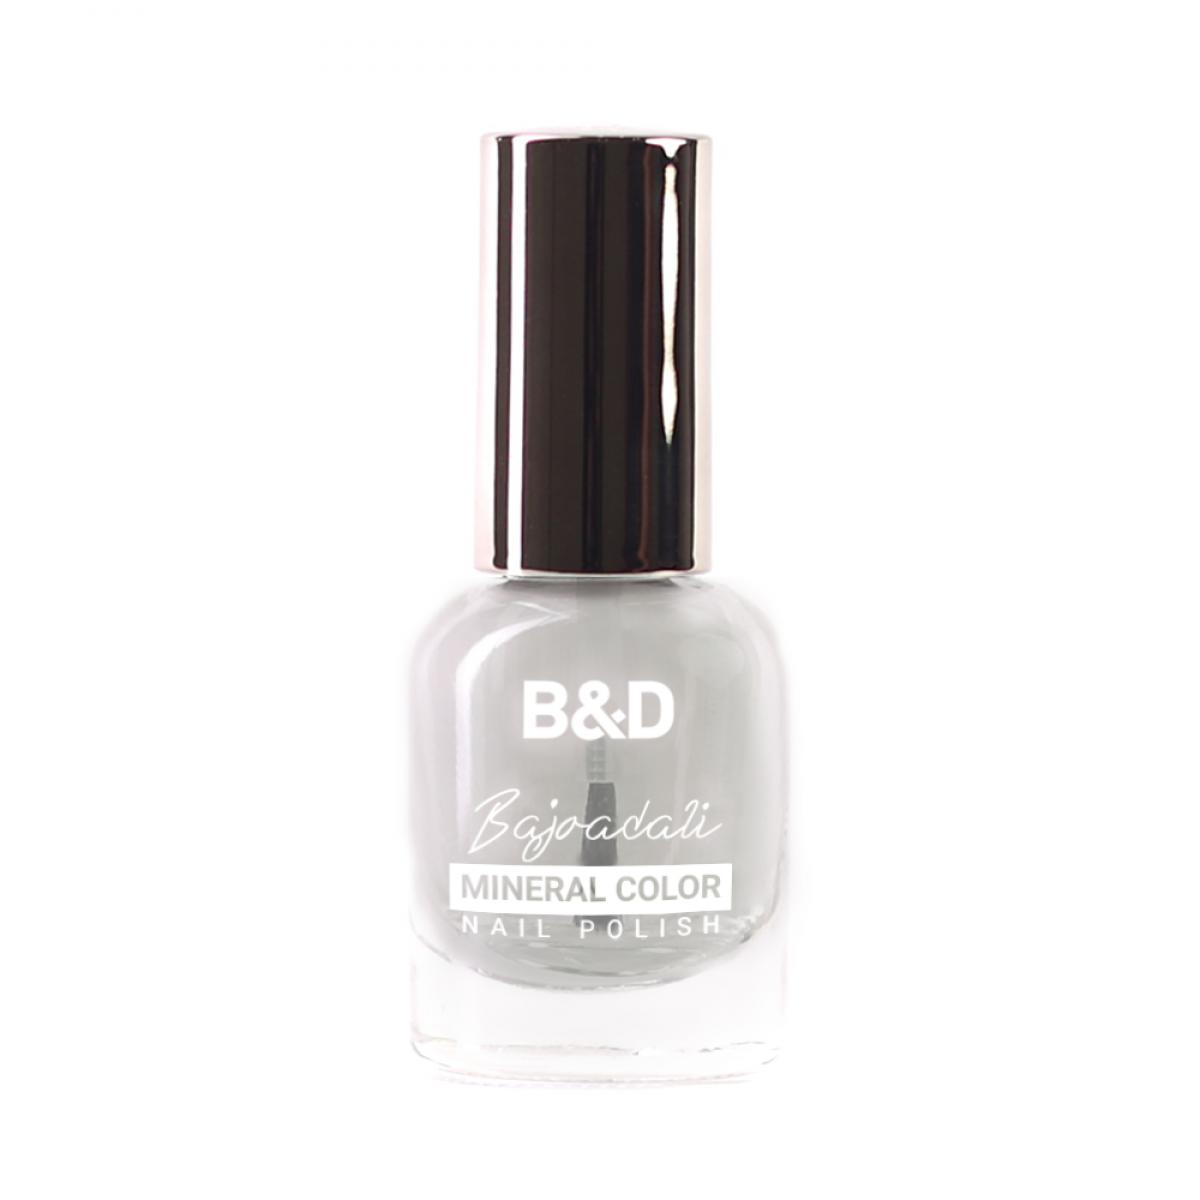 لاک تاپ کات مات کن - B&D Mineral Color Top Coat matte Nail polish